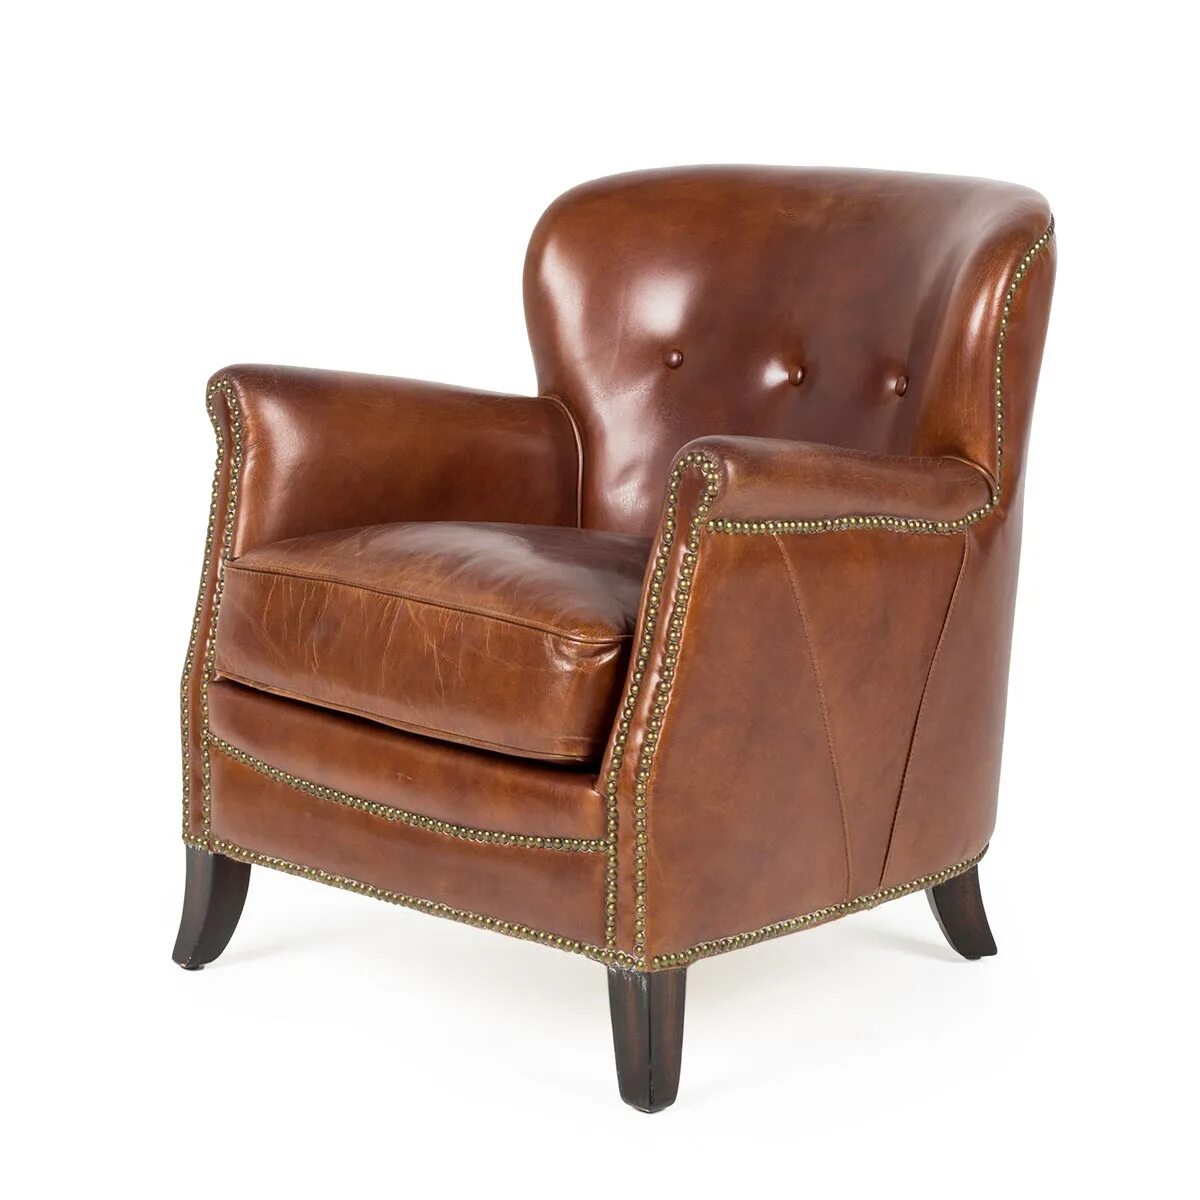 Высокое кожаное кресло. Кожаное кресло в английском стиле. Финское кожаное кресло. Кресло кожаное коричневое. Кресло кожа английская классика.